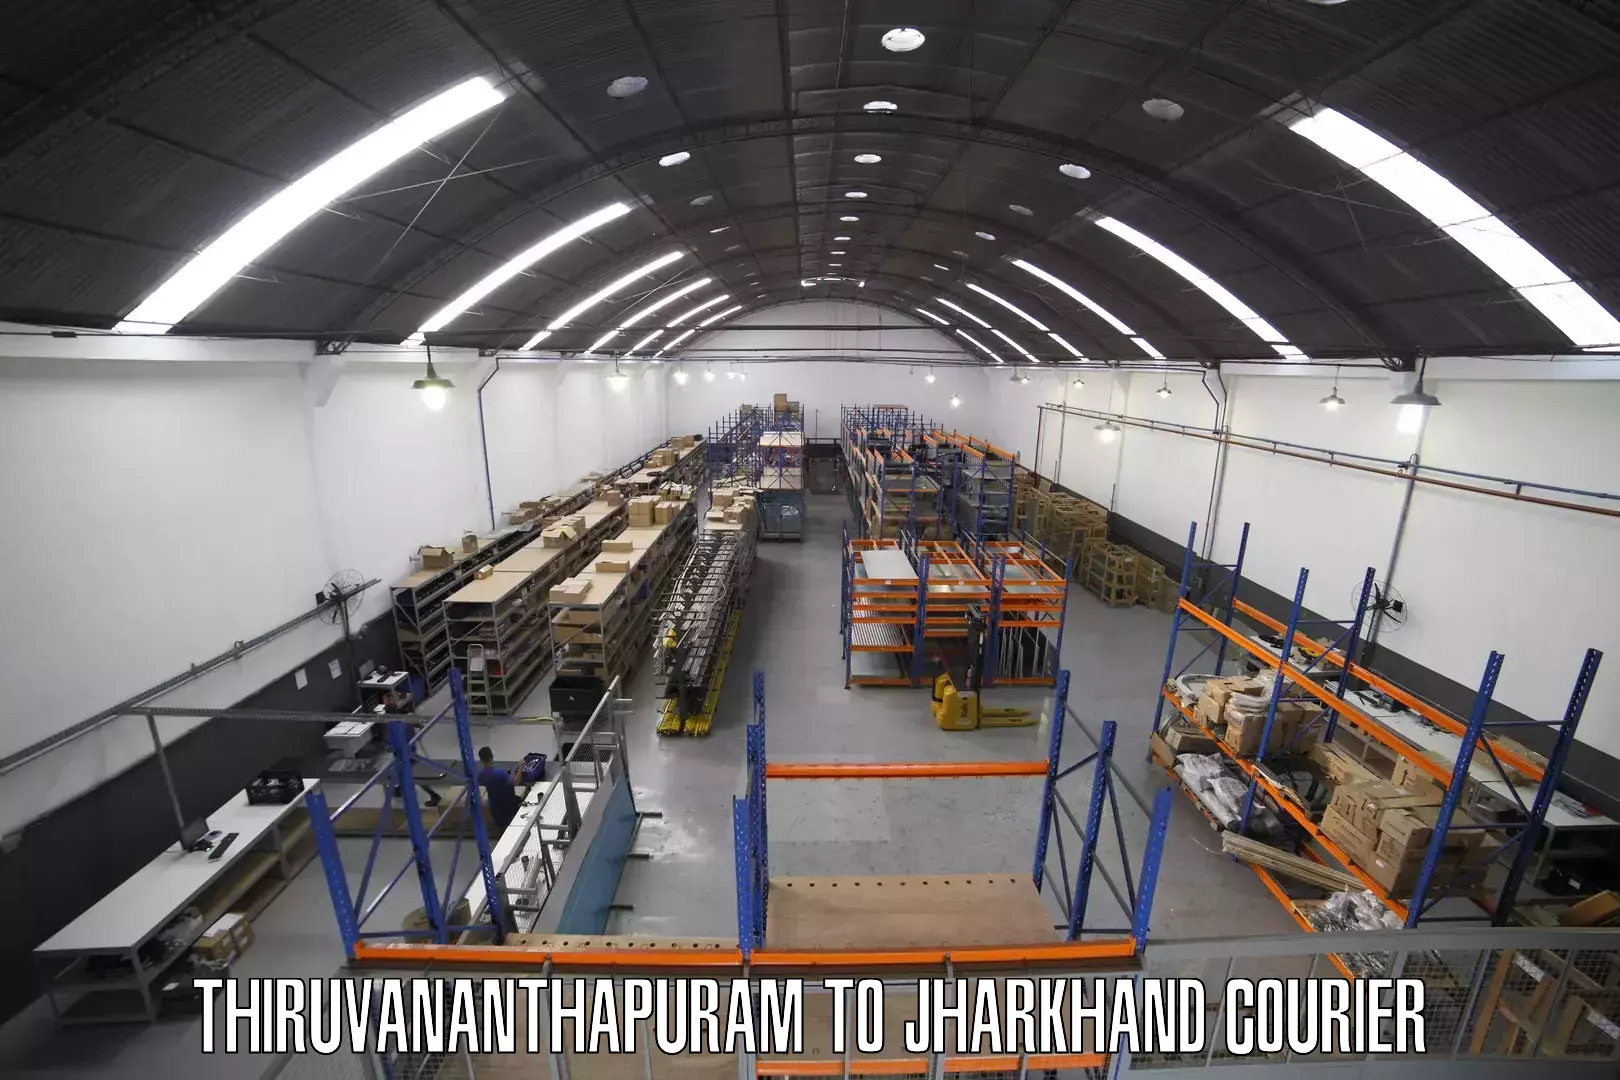 Professional courier handling Thiruvananthapuram to Jharkhand